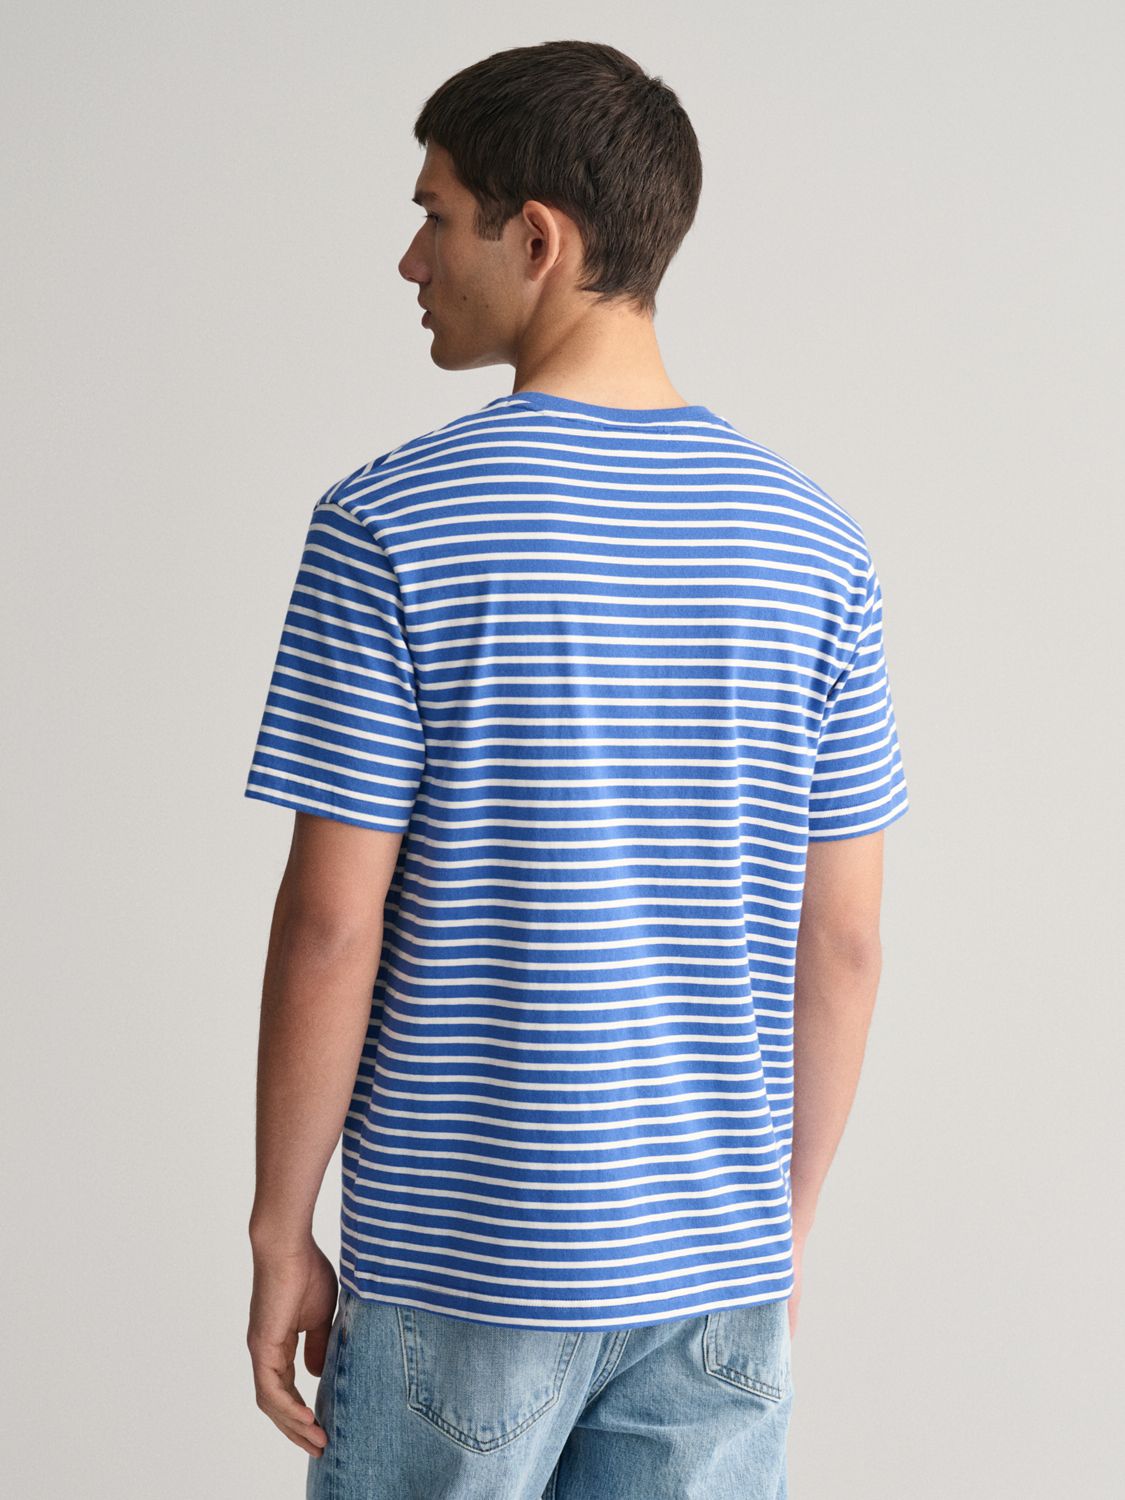 GANT Striped T-Shirt, Blue/White, L